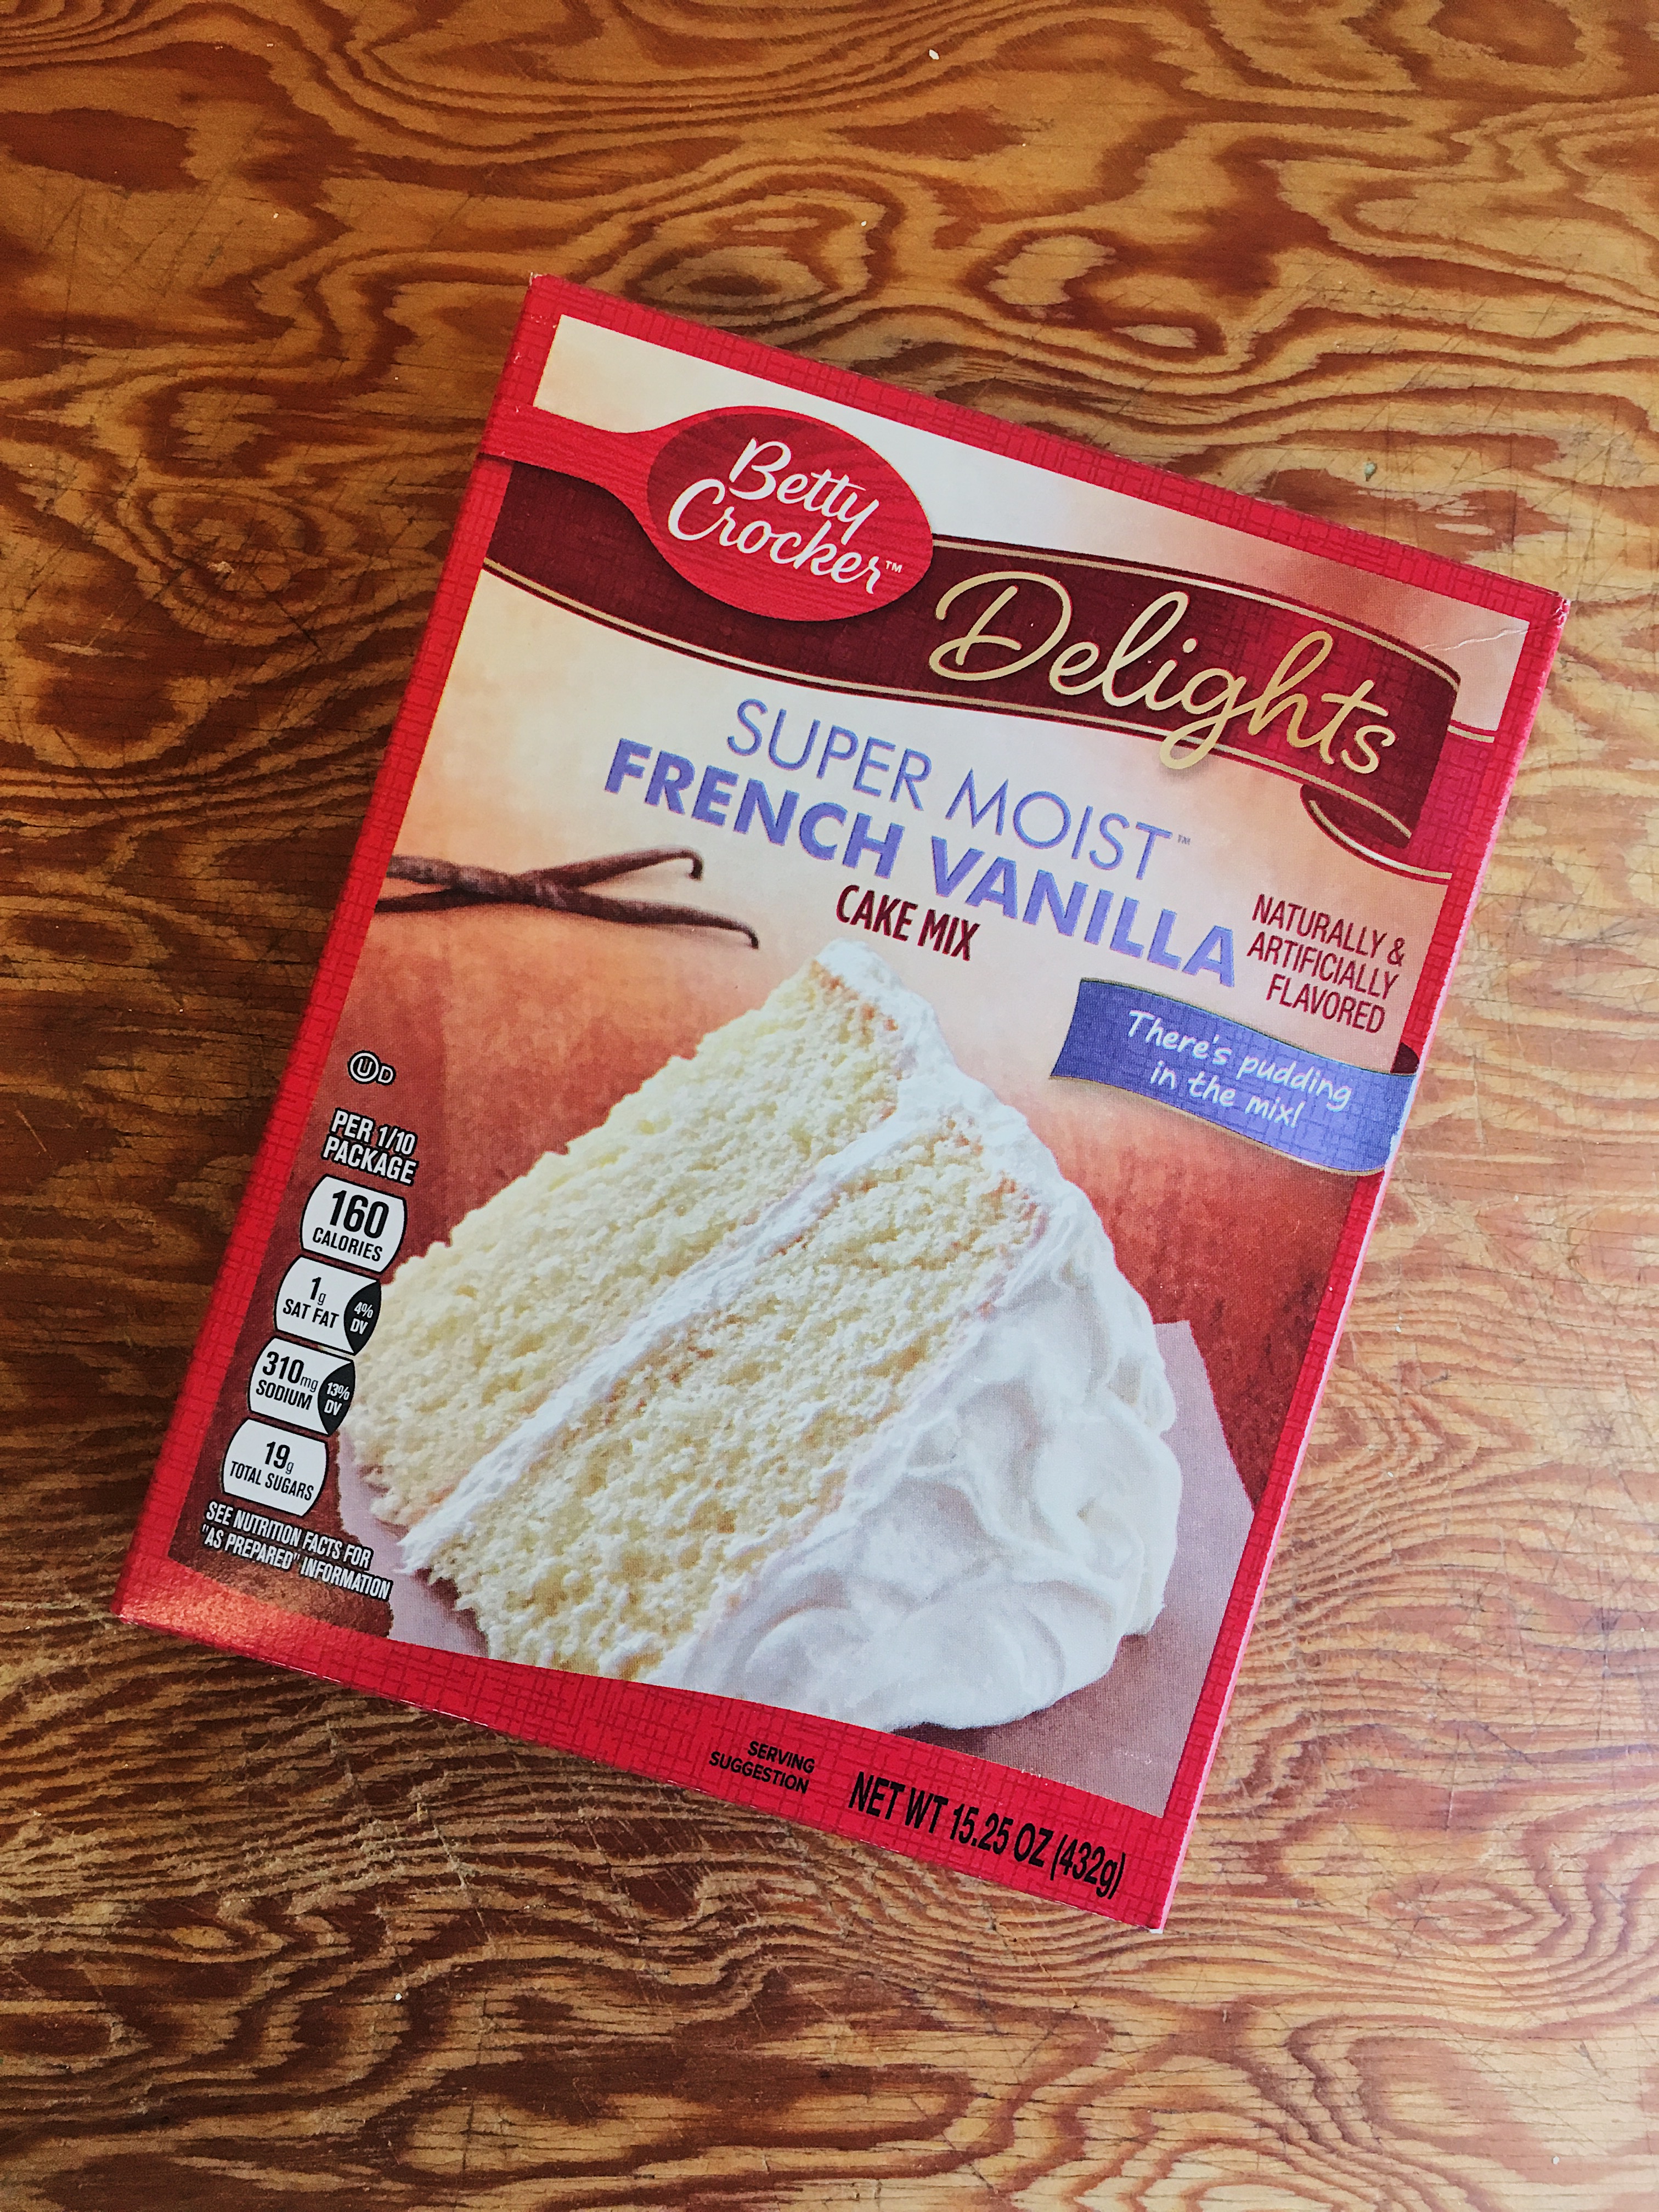 betty crocker french vanilla cake mix